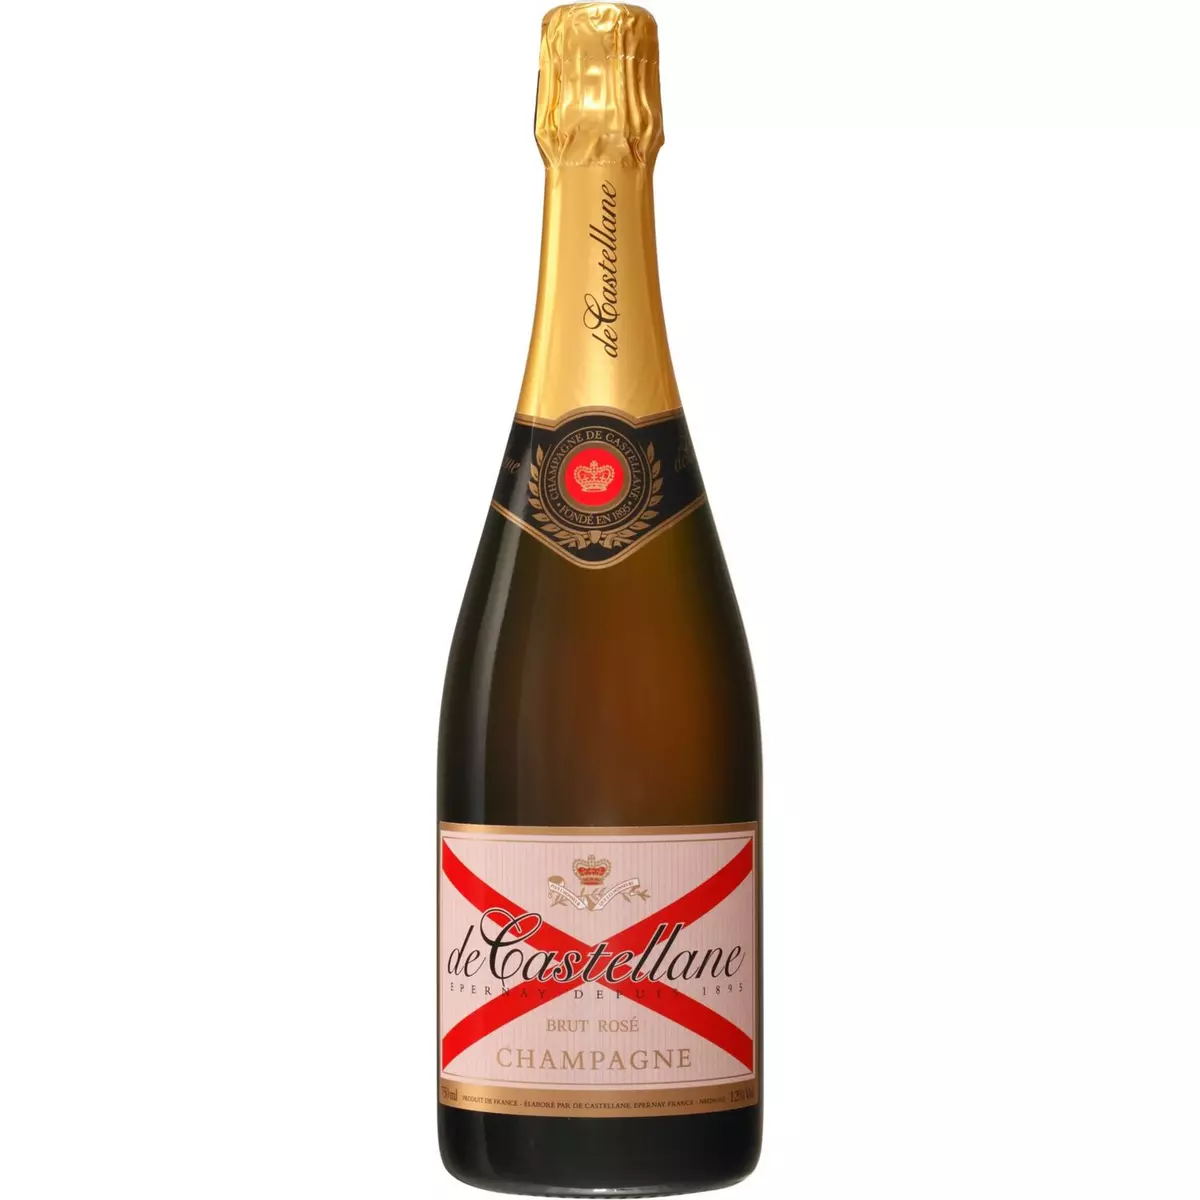 DE CASTELLANE AOP Champagne rosé 75cl